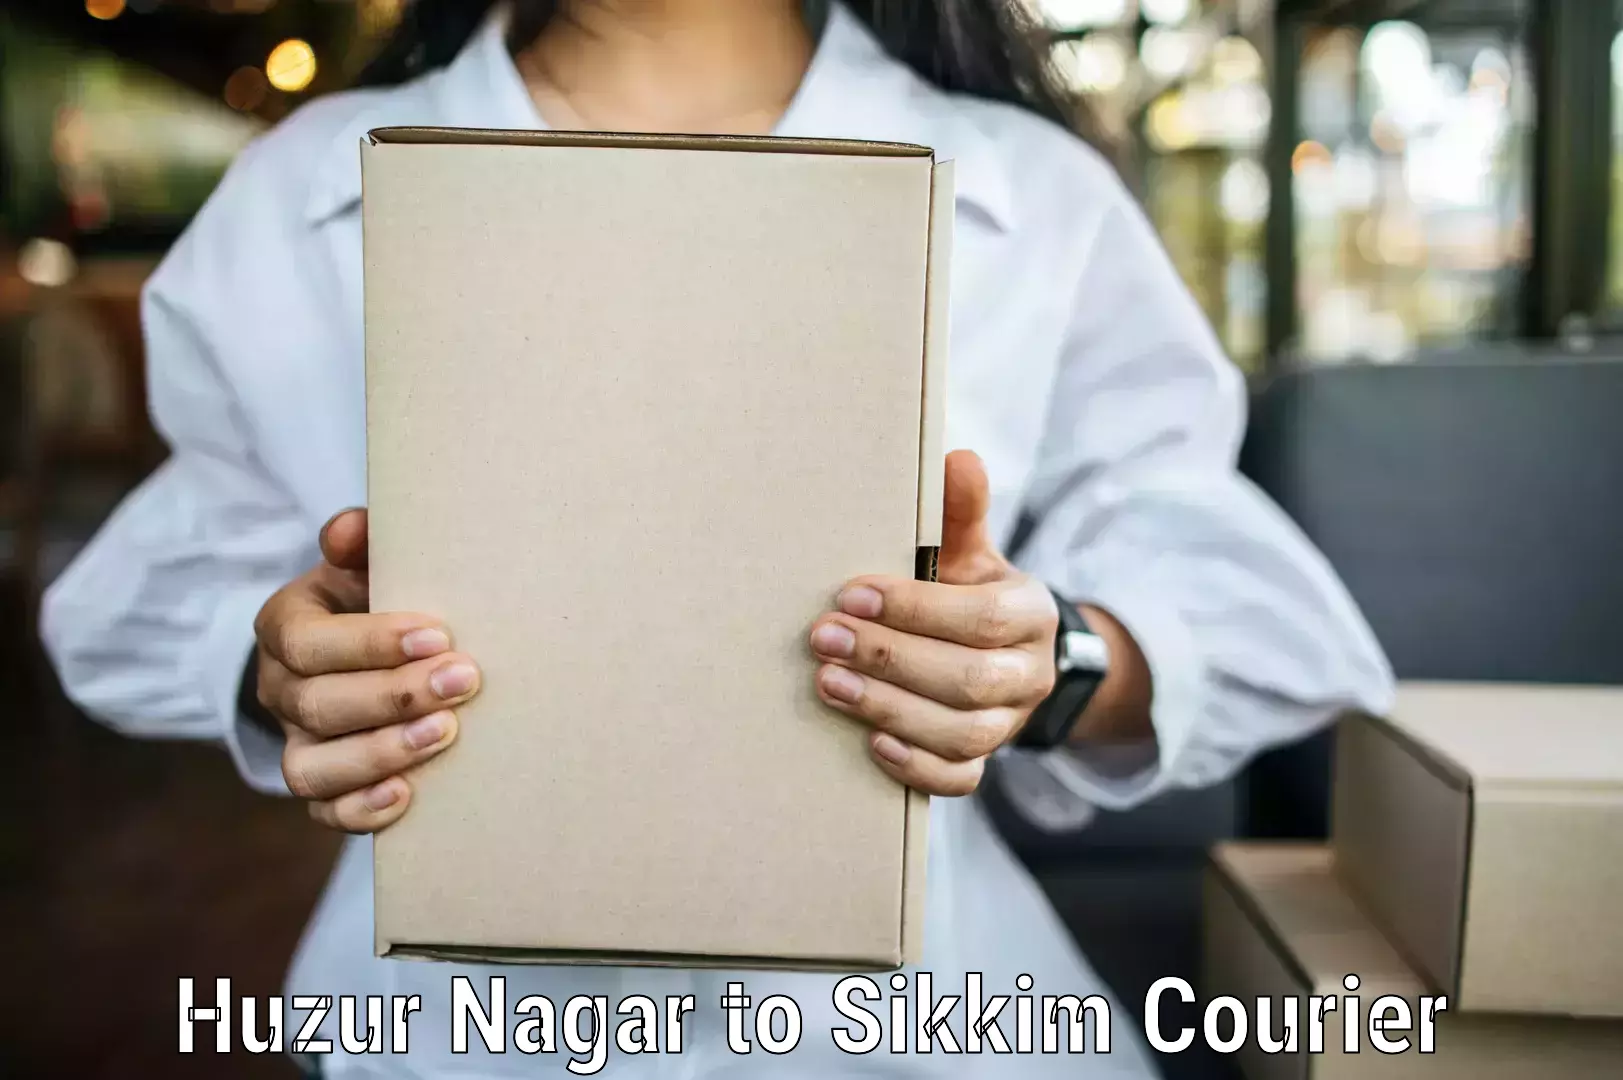 User-friendly courier app Huzur Nagar to West Sikkim